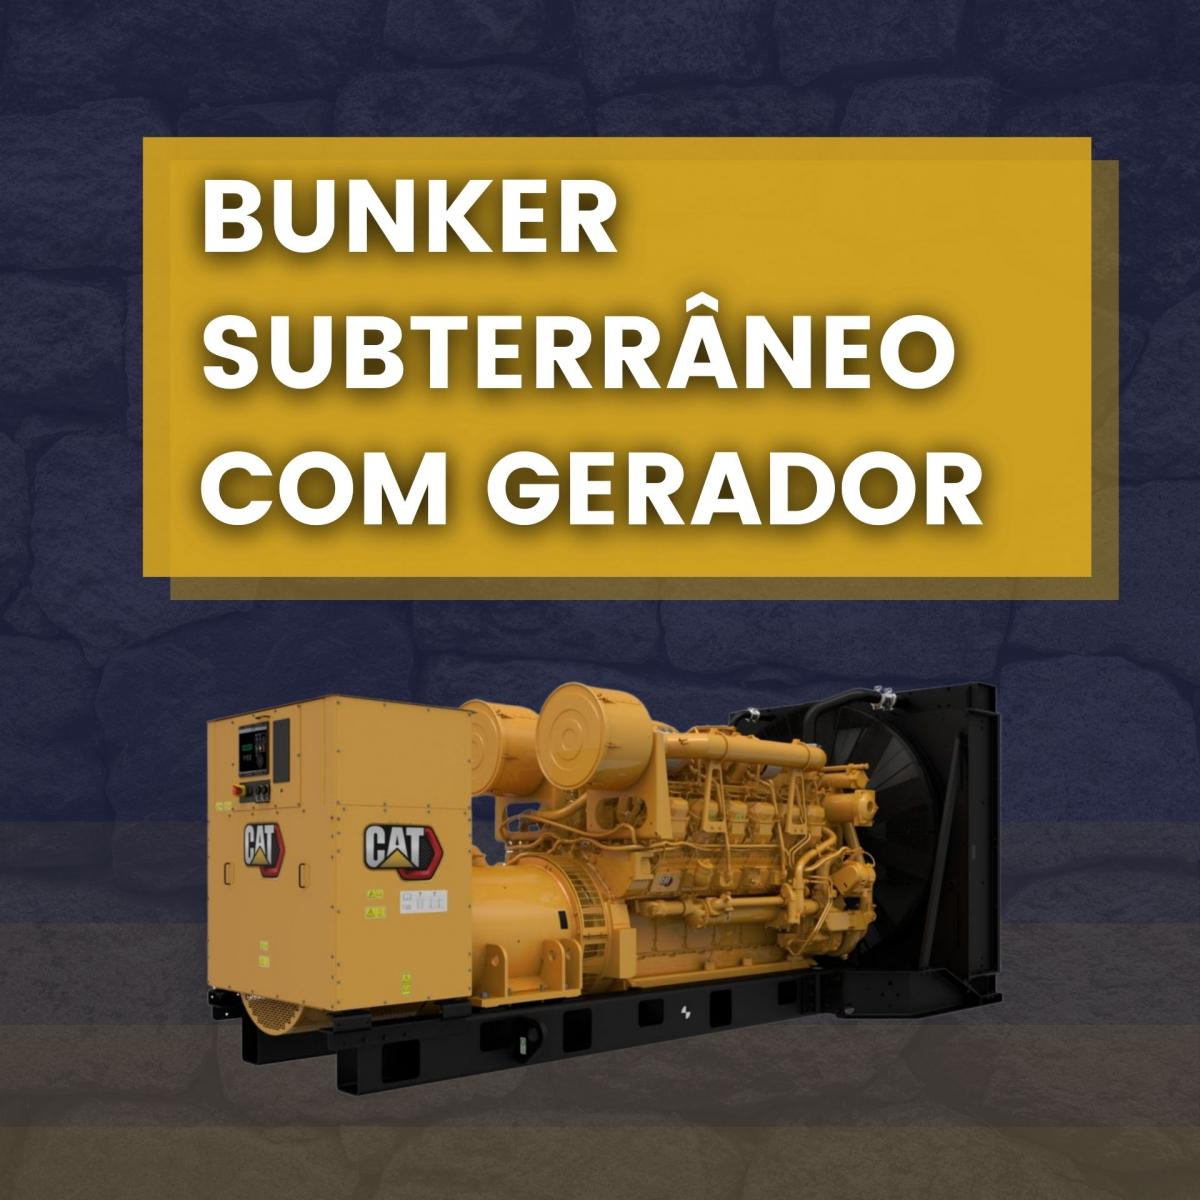 bunker subterraneo